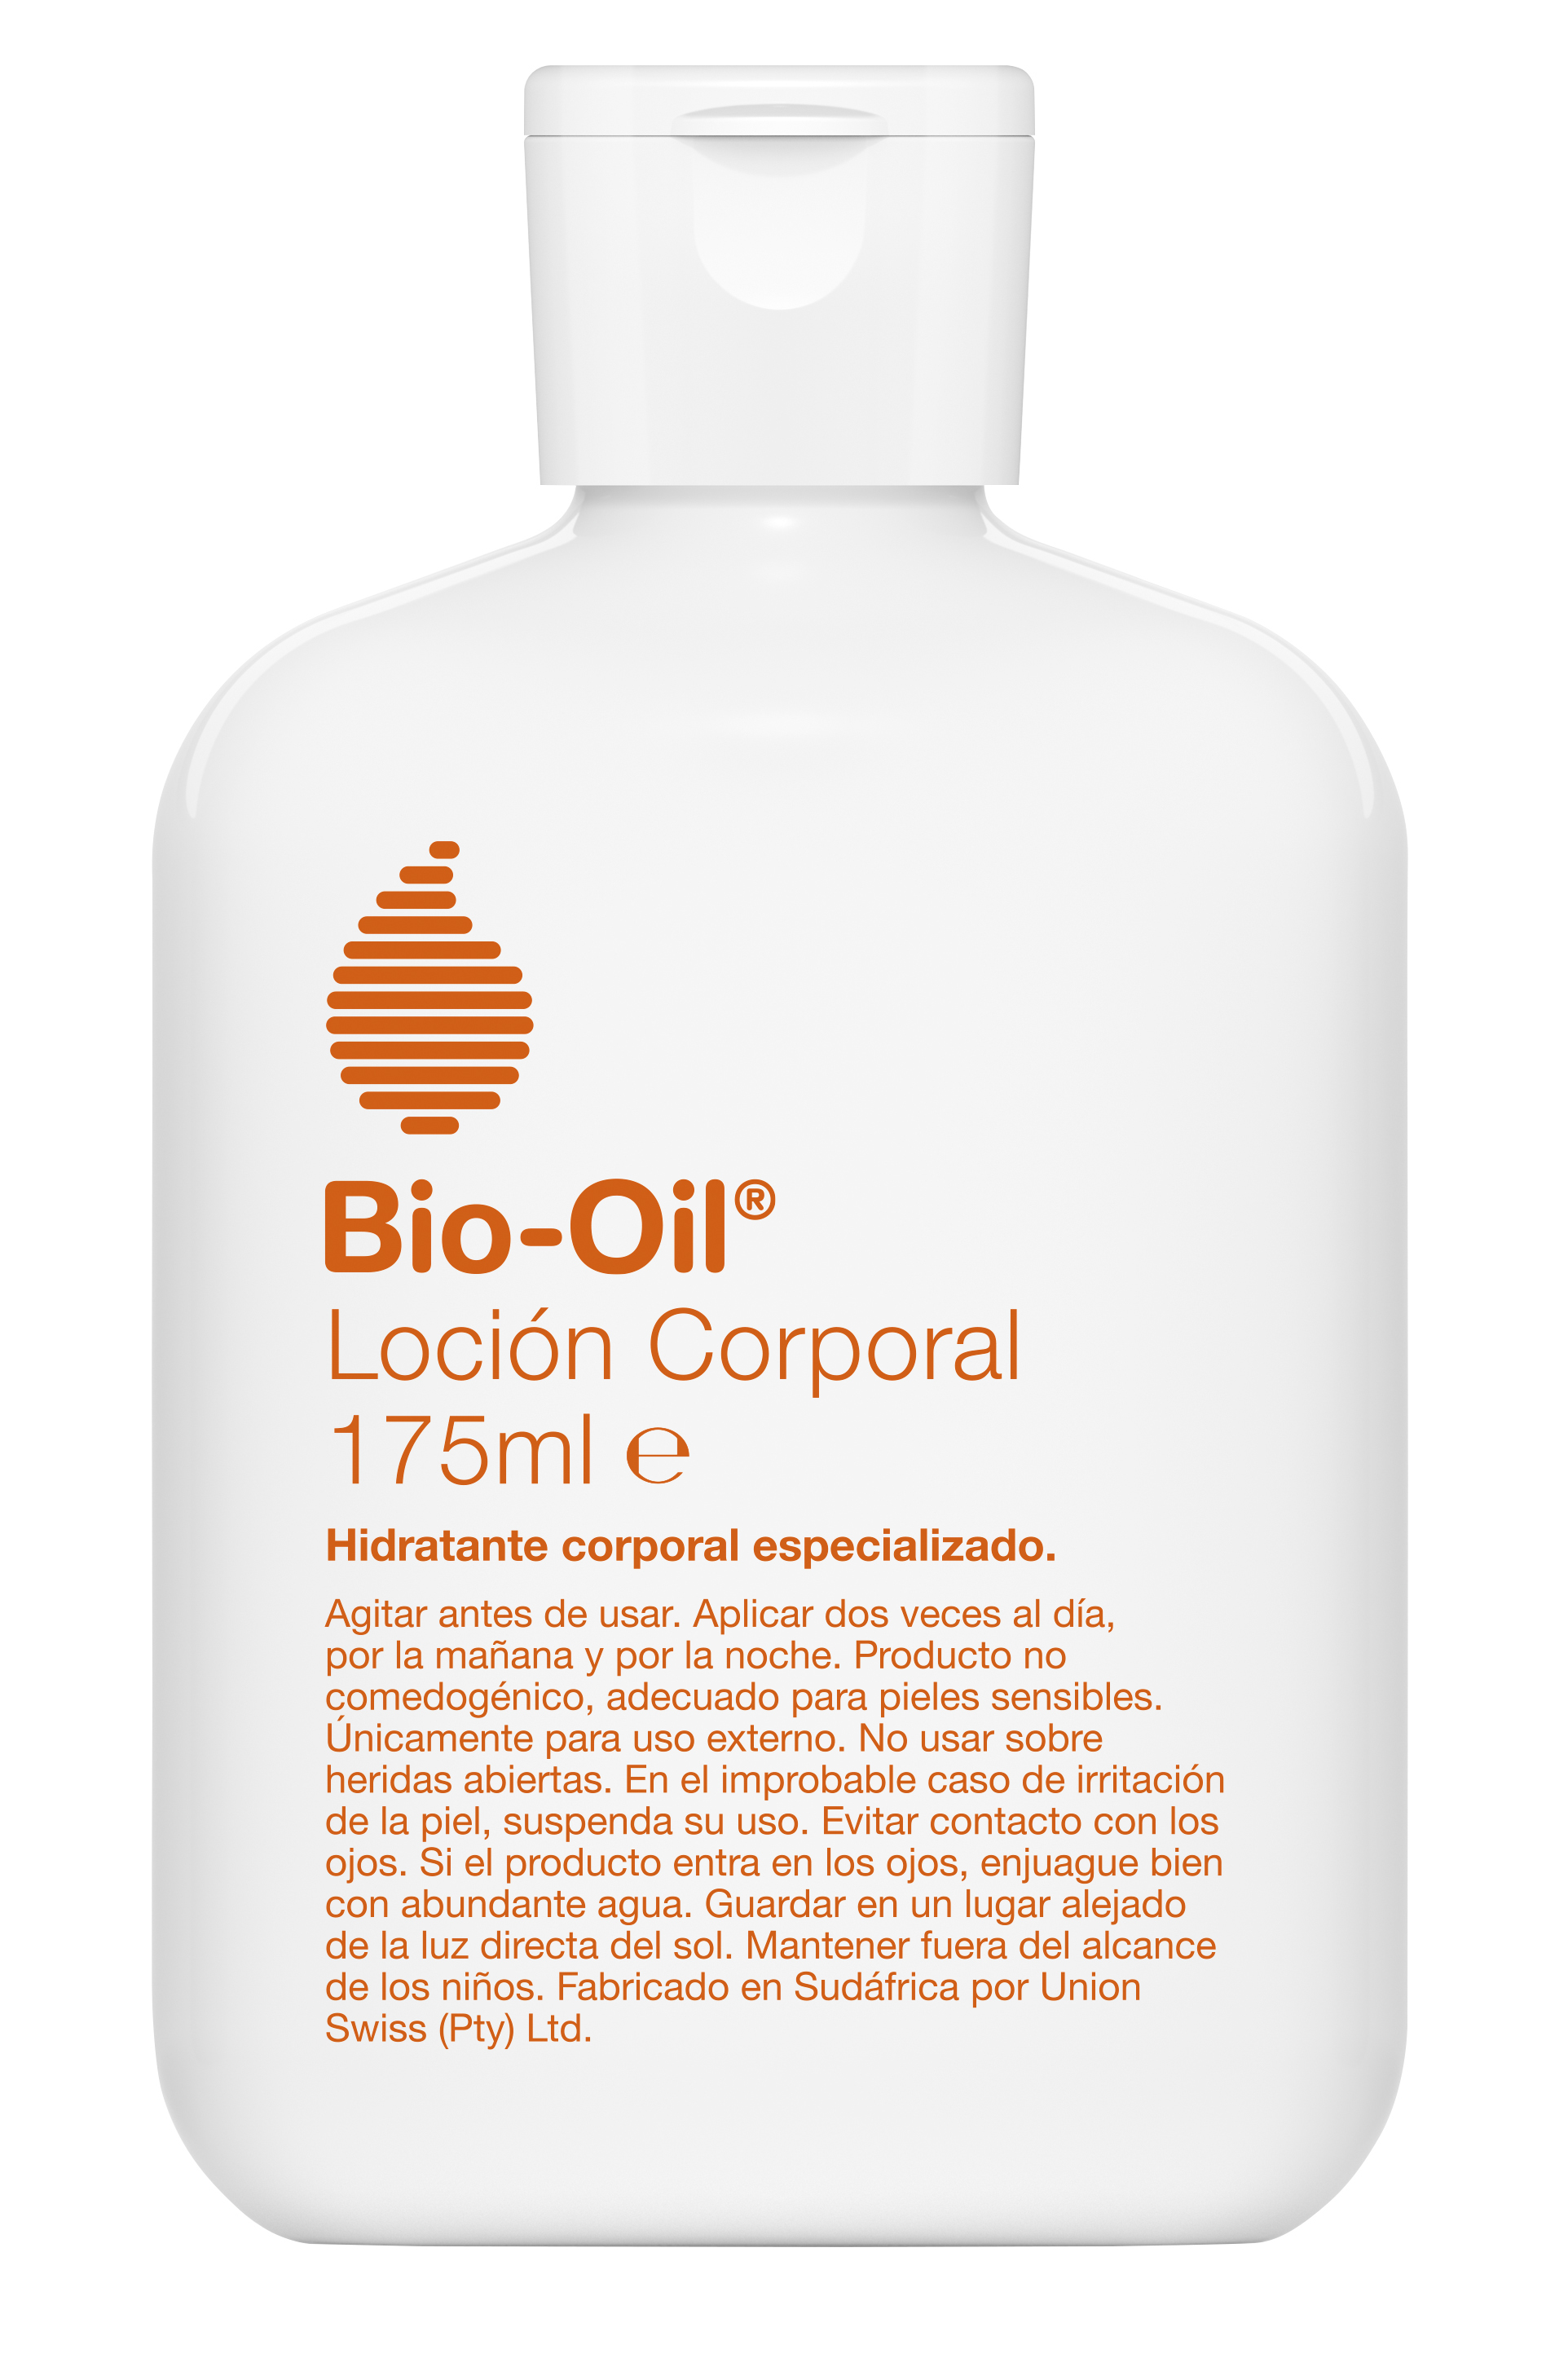 Locin de Bio-Oil